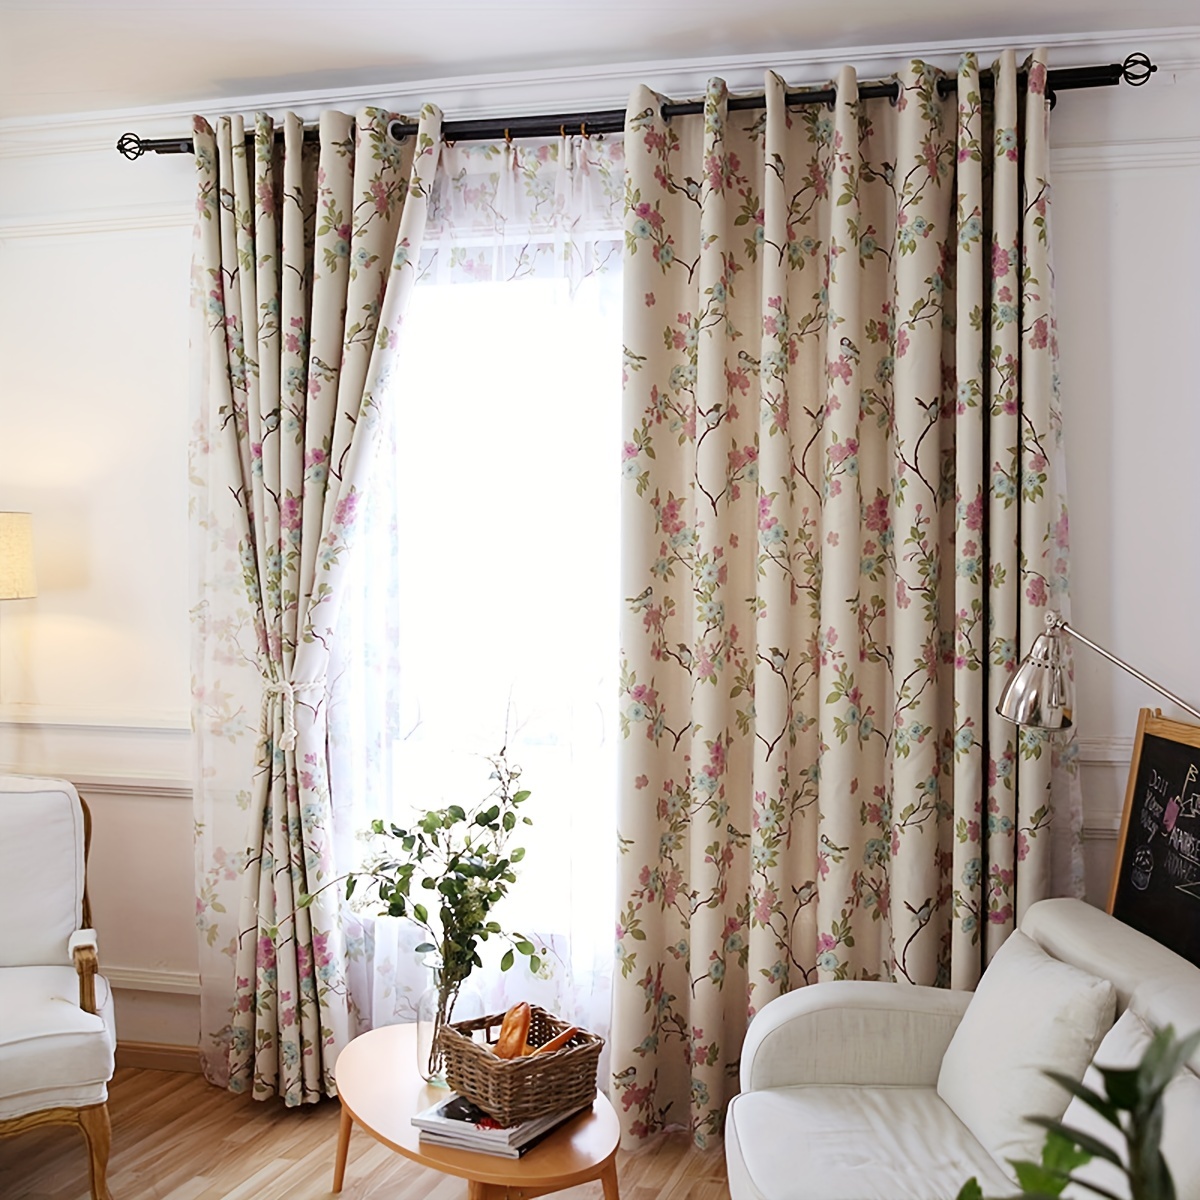 Cortinas opacas opacas de color beige, con aislamiento térmico, cortinas  modernas para oscurecer la habitación, con ganchos para sala de estar